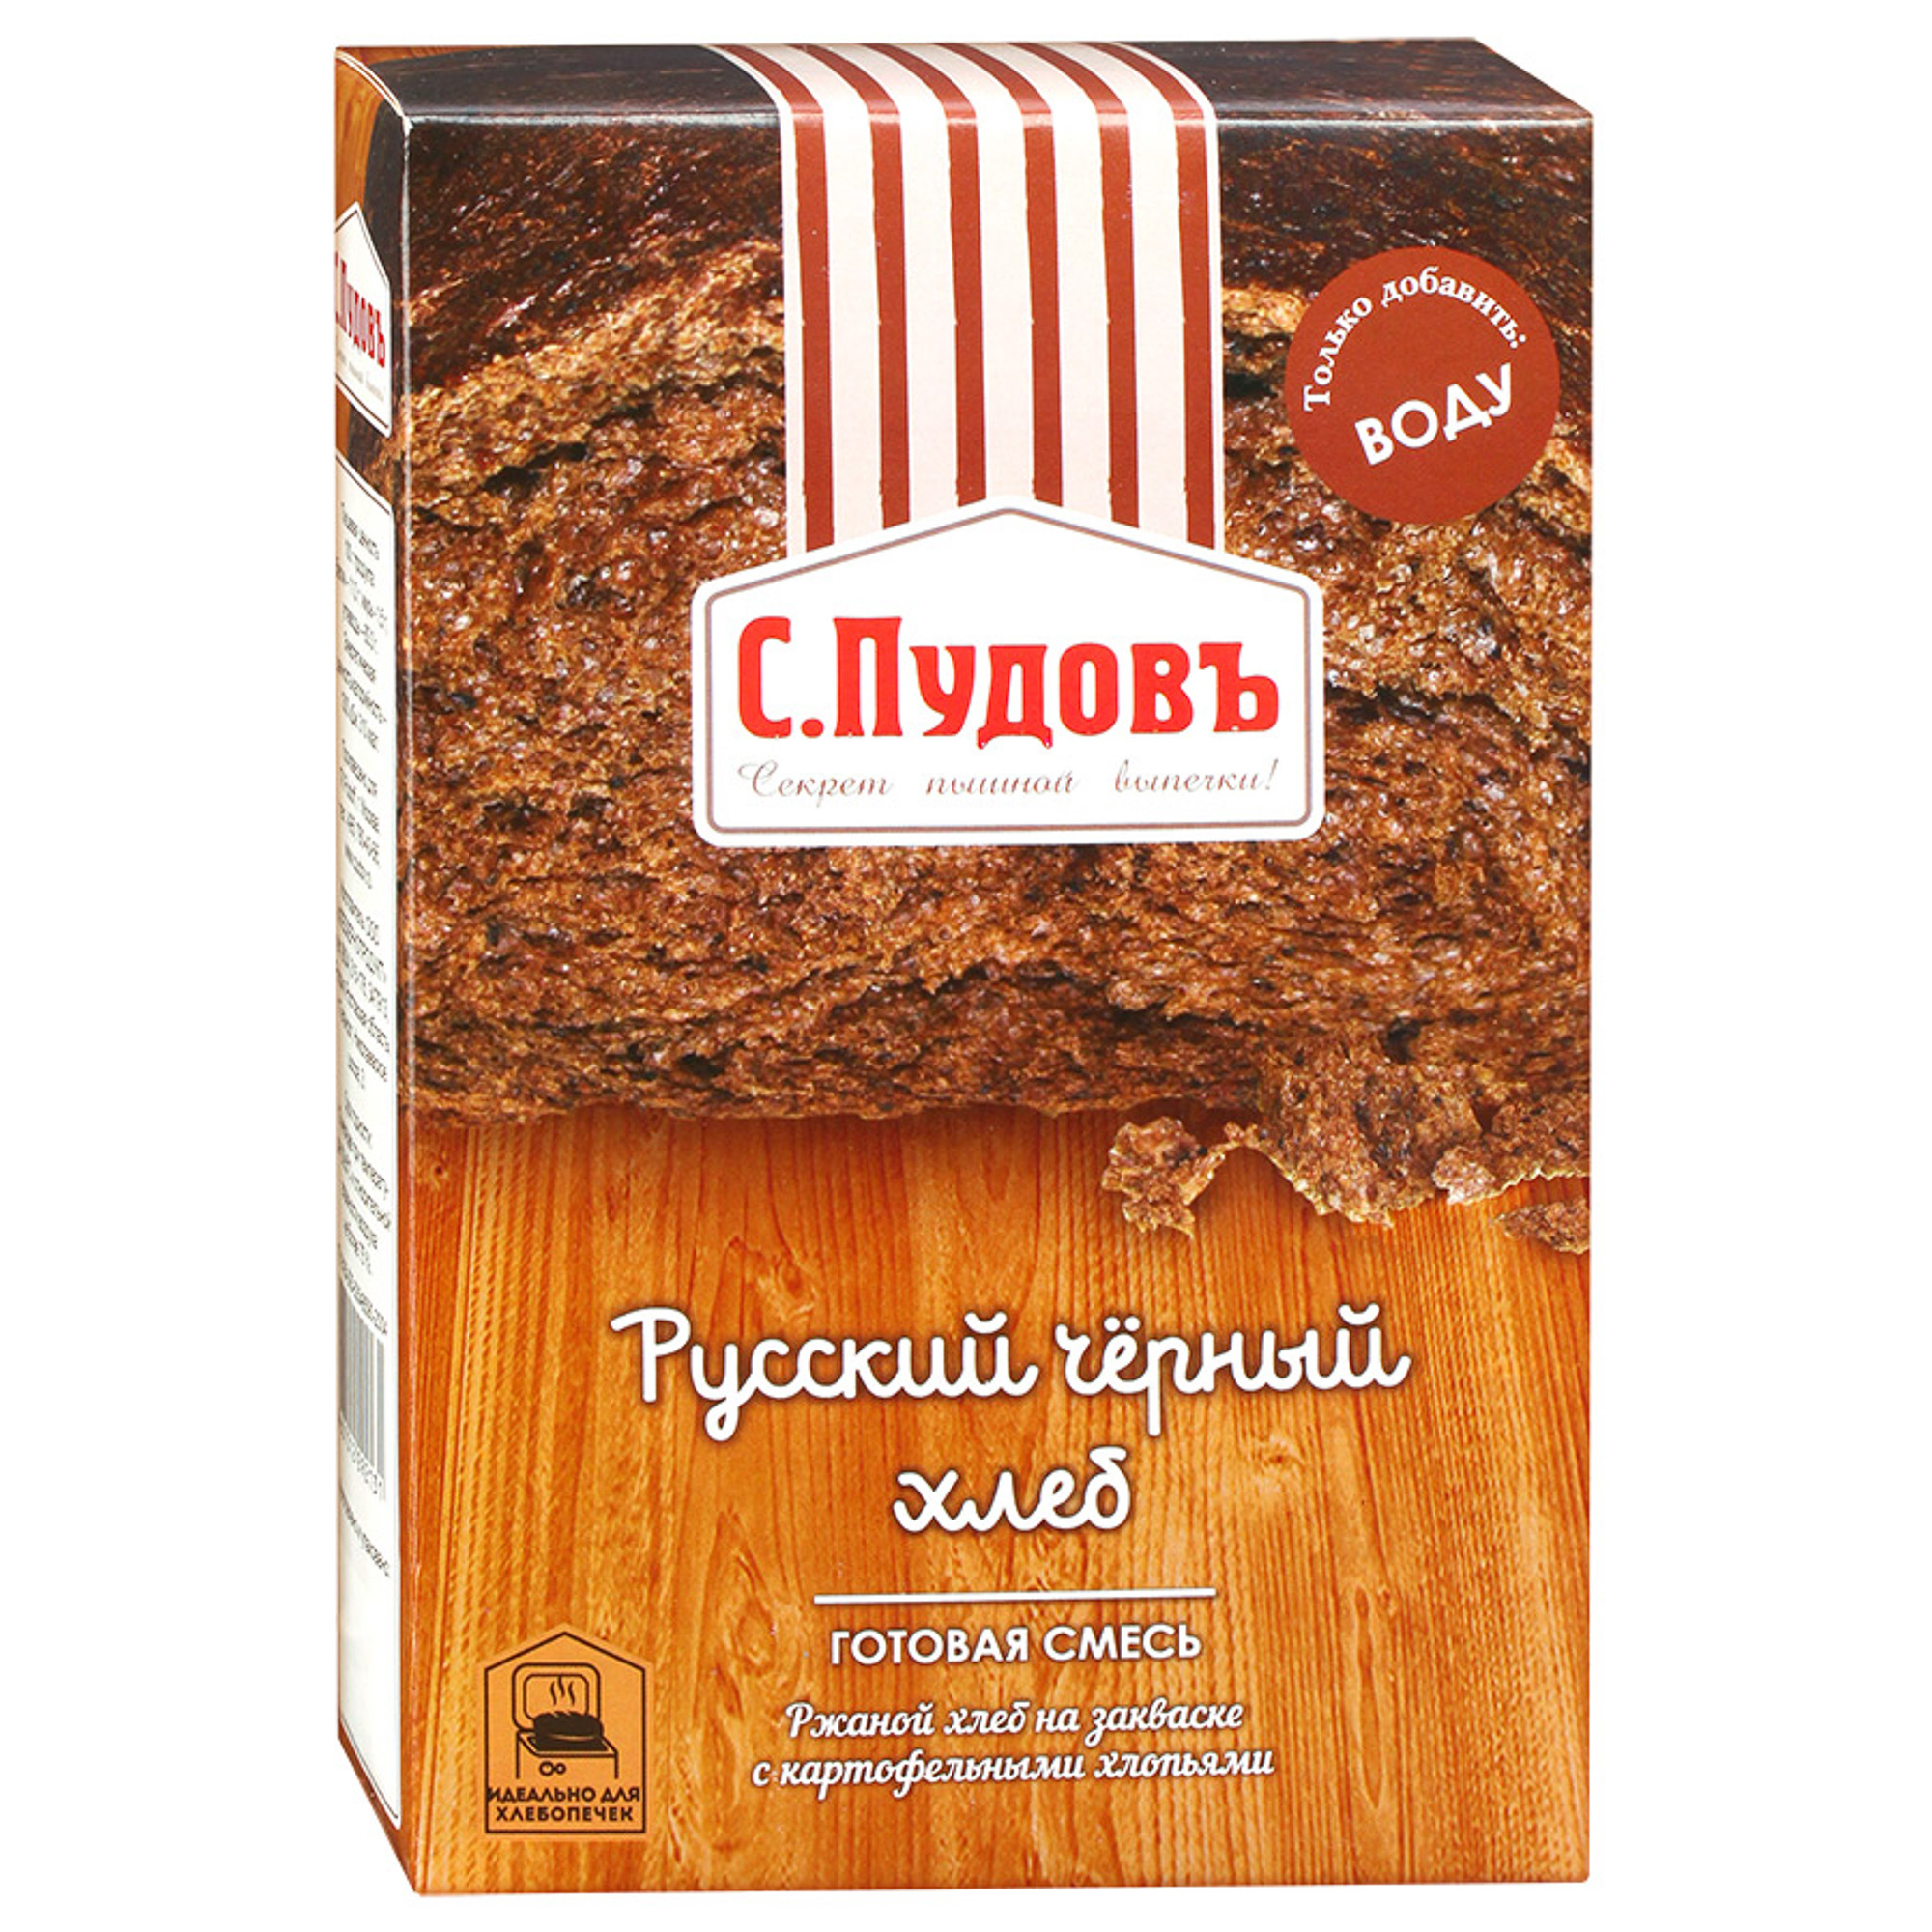 Хлебная смесь С.Пудовъ Русский черный хлеб 500 г дрожжи сухие saf instant хлебопекарные инстантные 125 гр